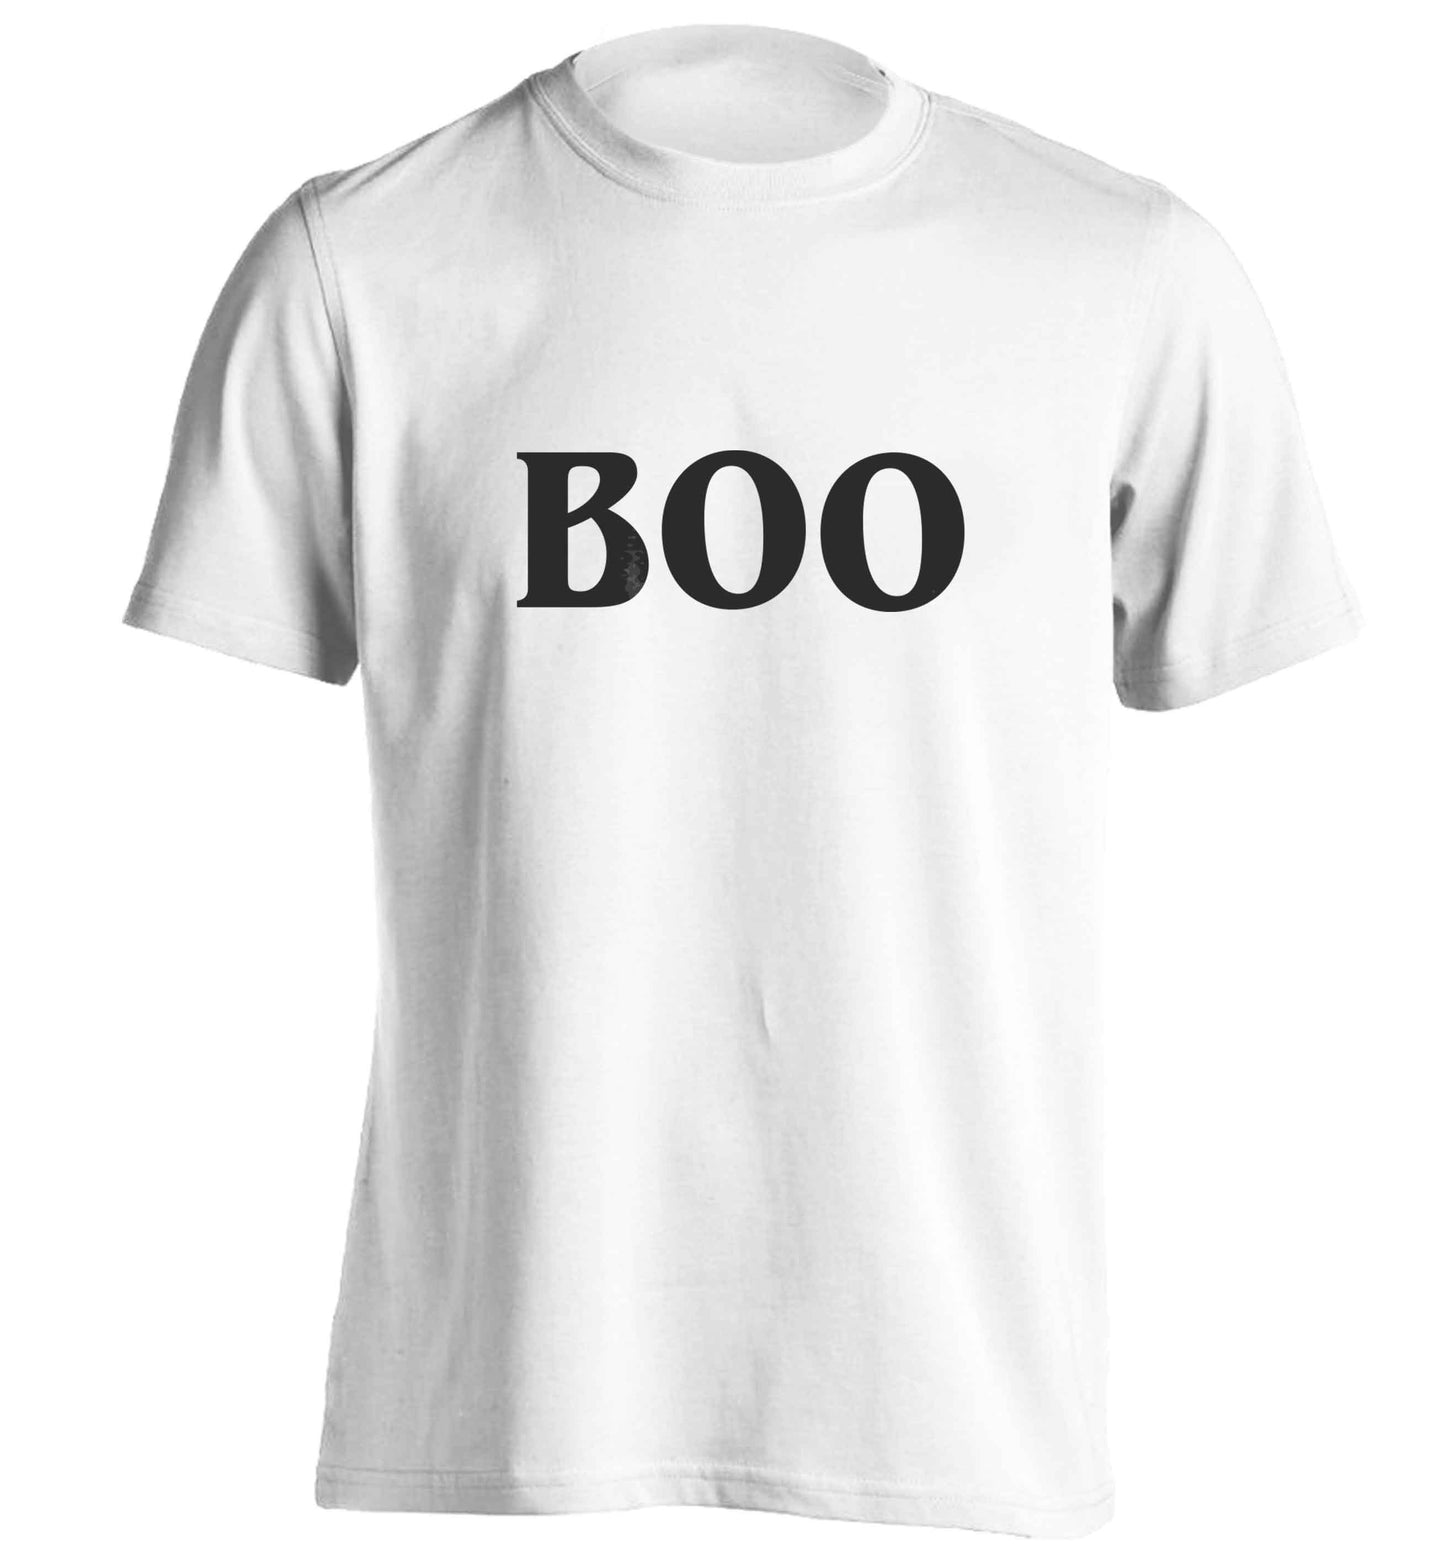 Boo adults unisex white Tshirt 2XL